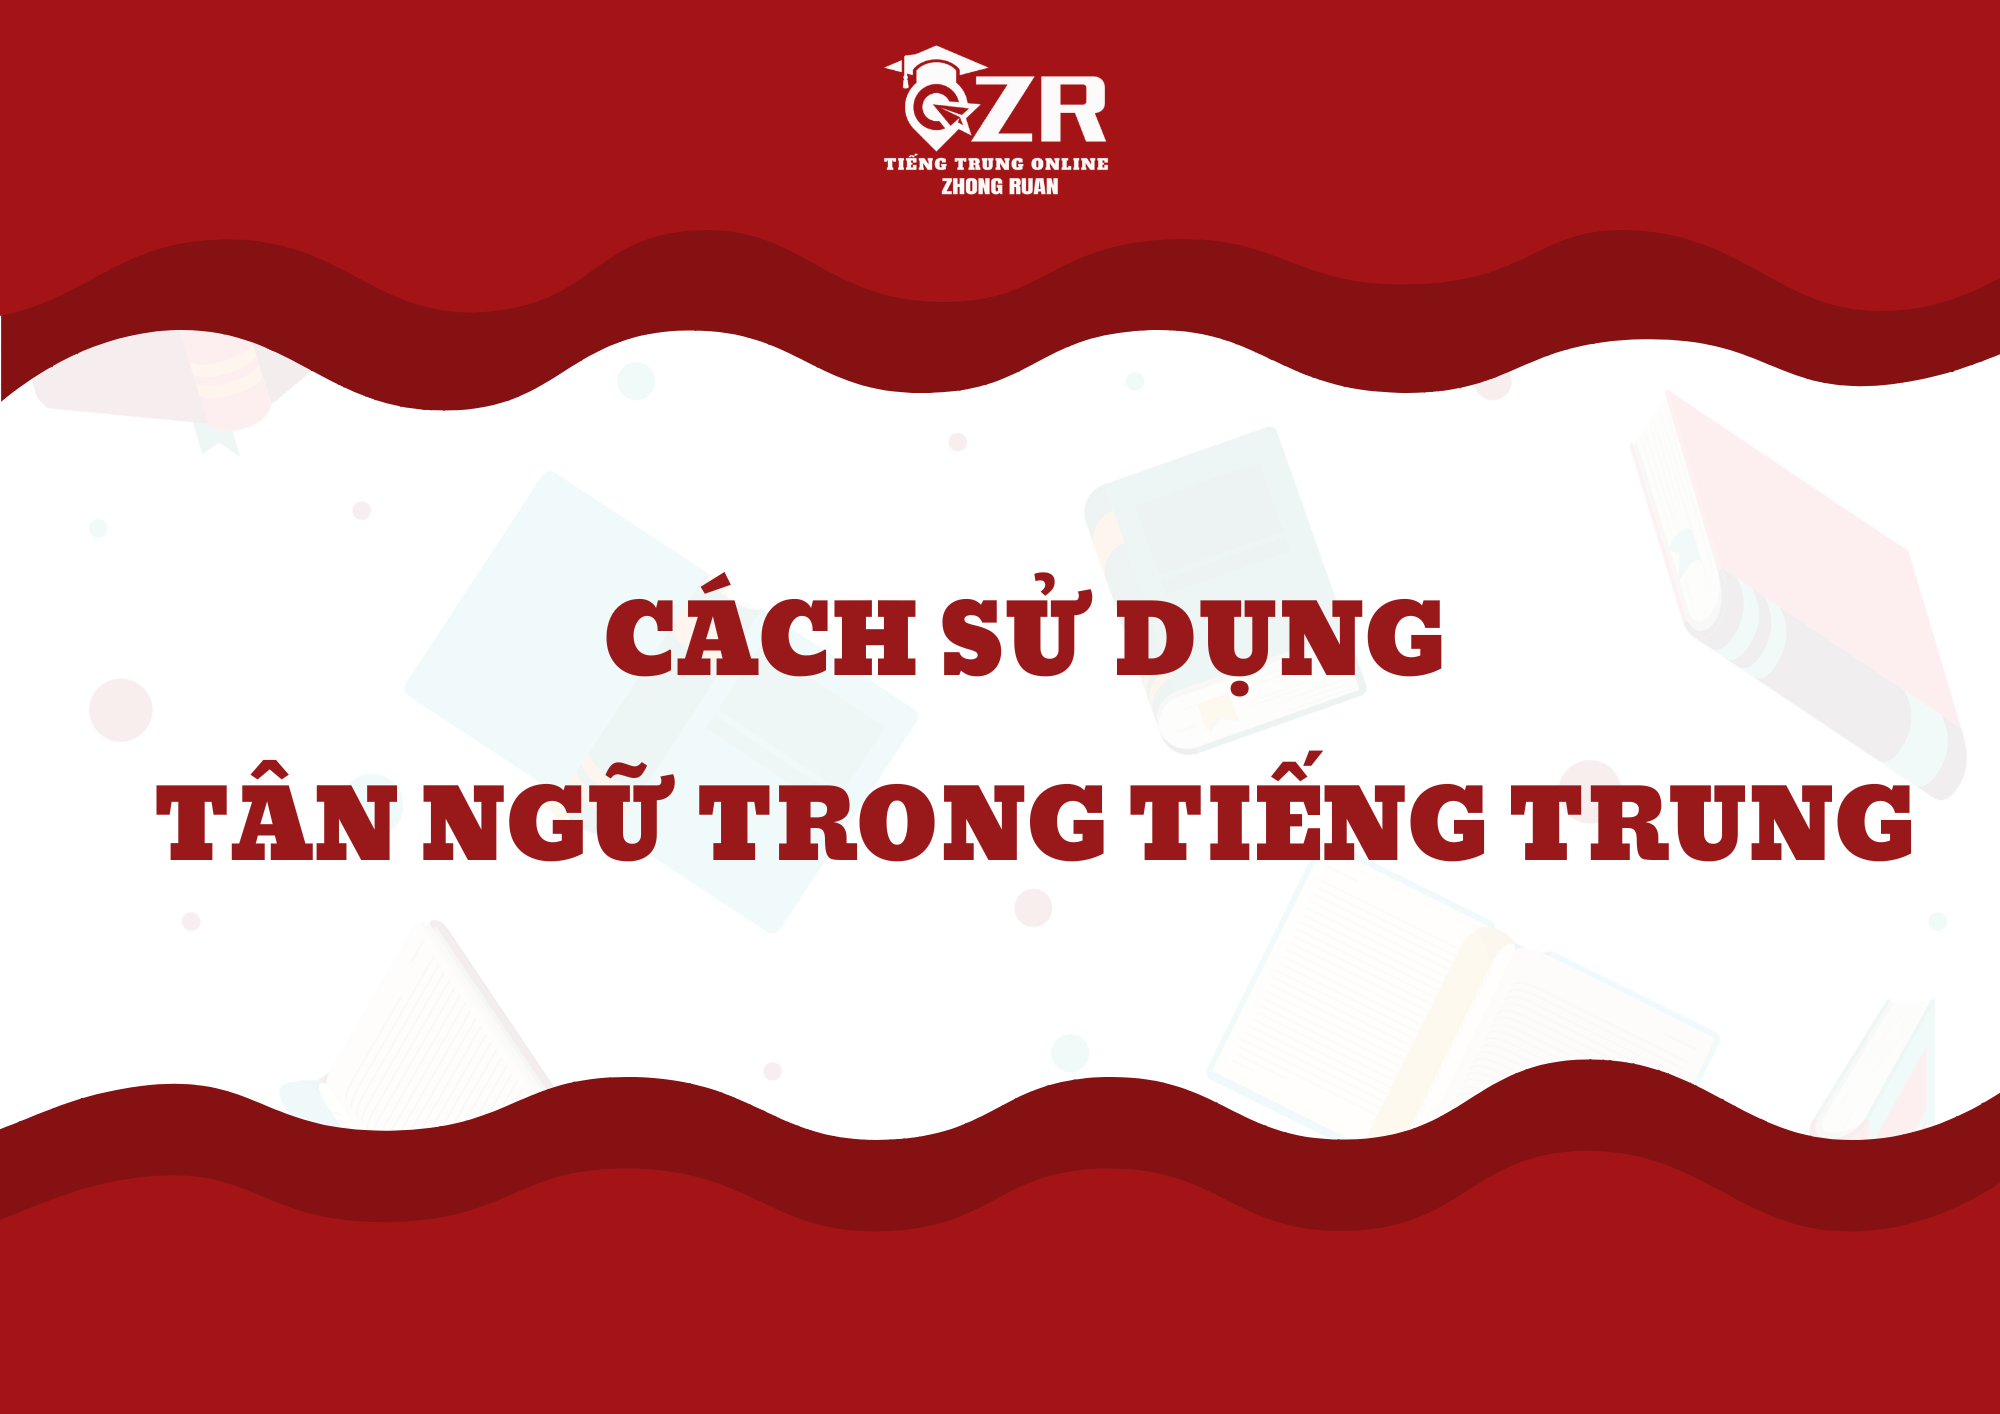 Tân ngữ trong tiếng Trung là thành phần thuộc vị ngữ trong câu, thường đứng sau động từ chỉ đối tượng hướng tới của hành động.